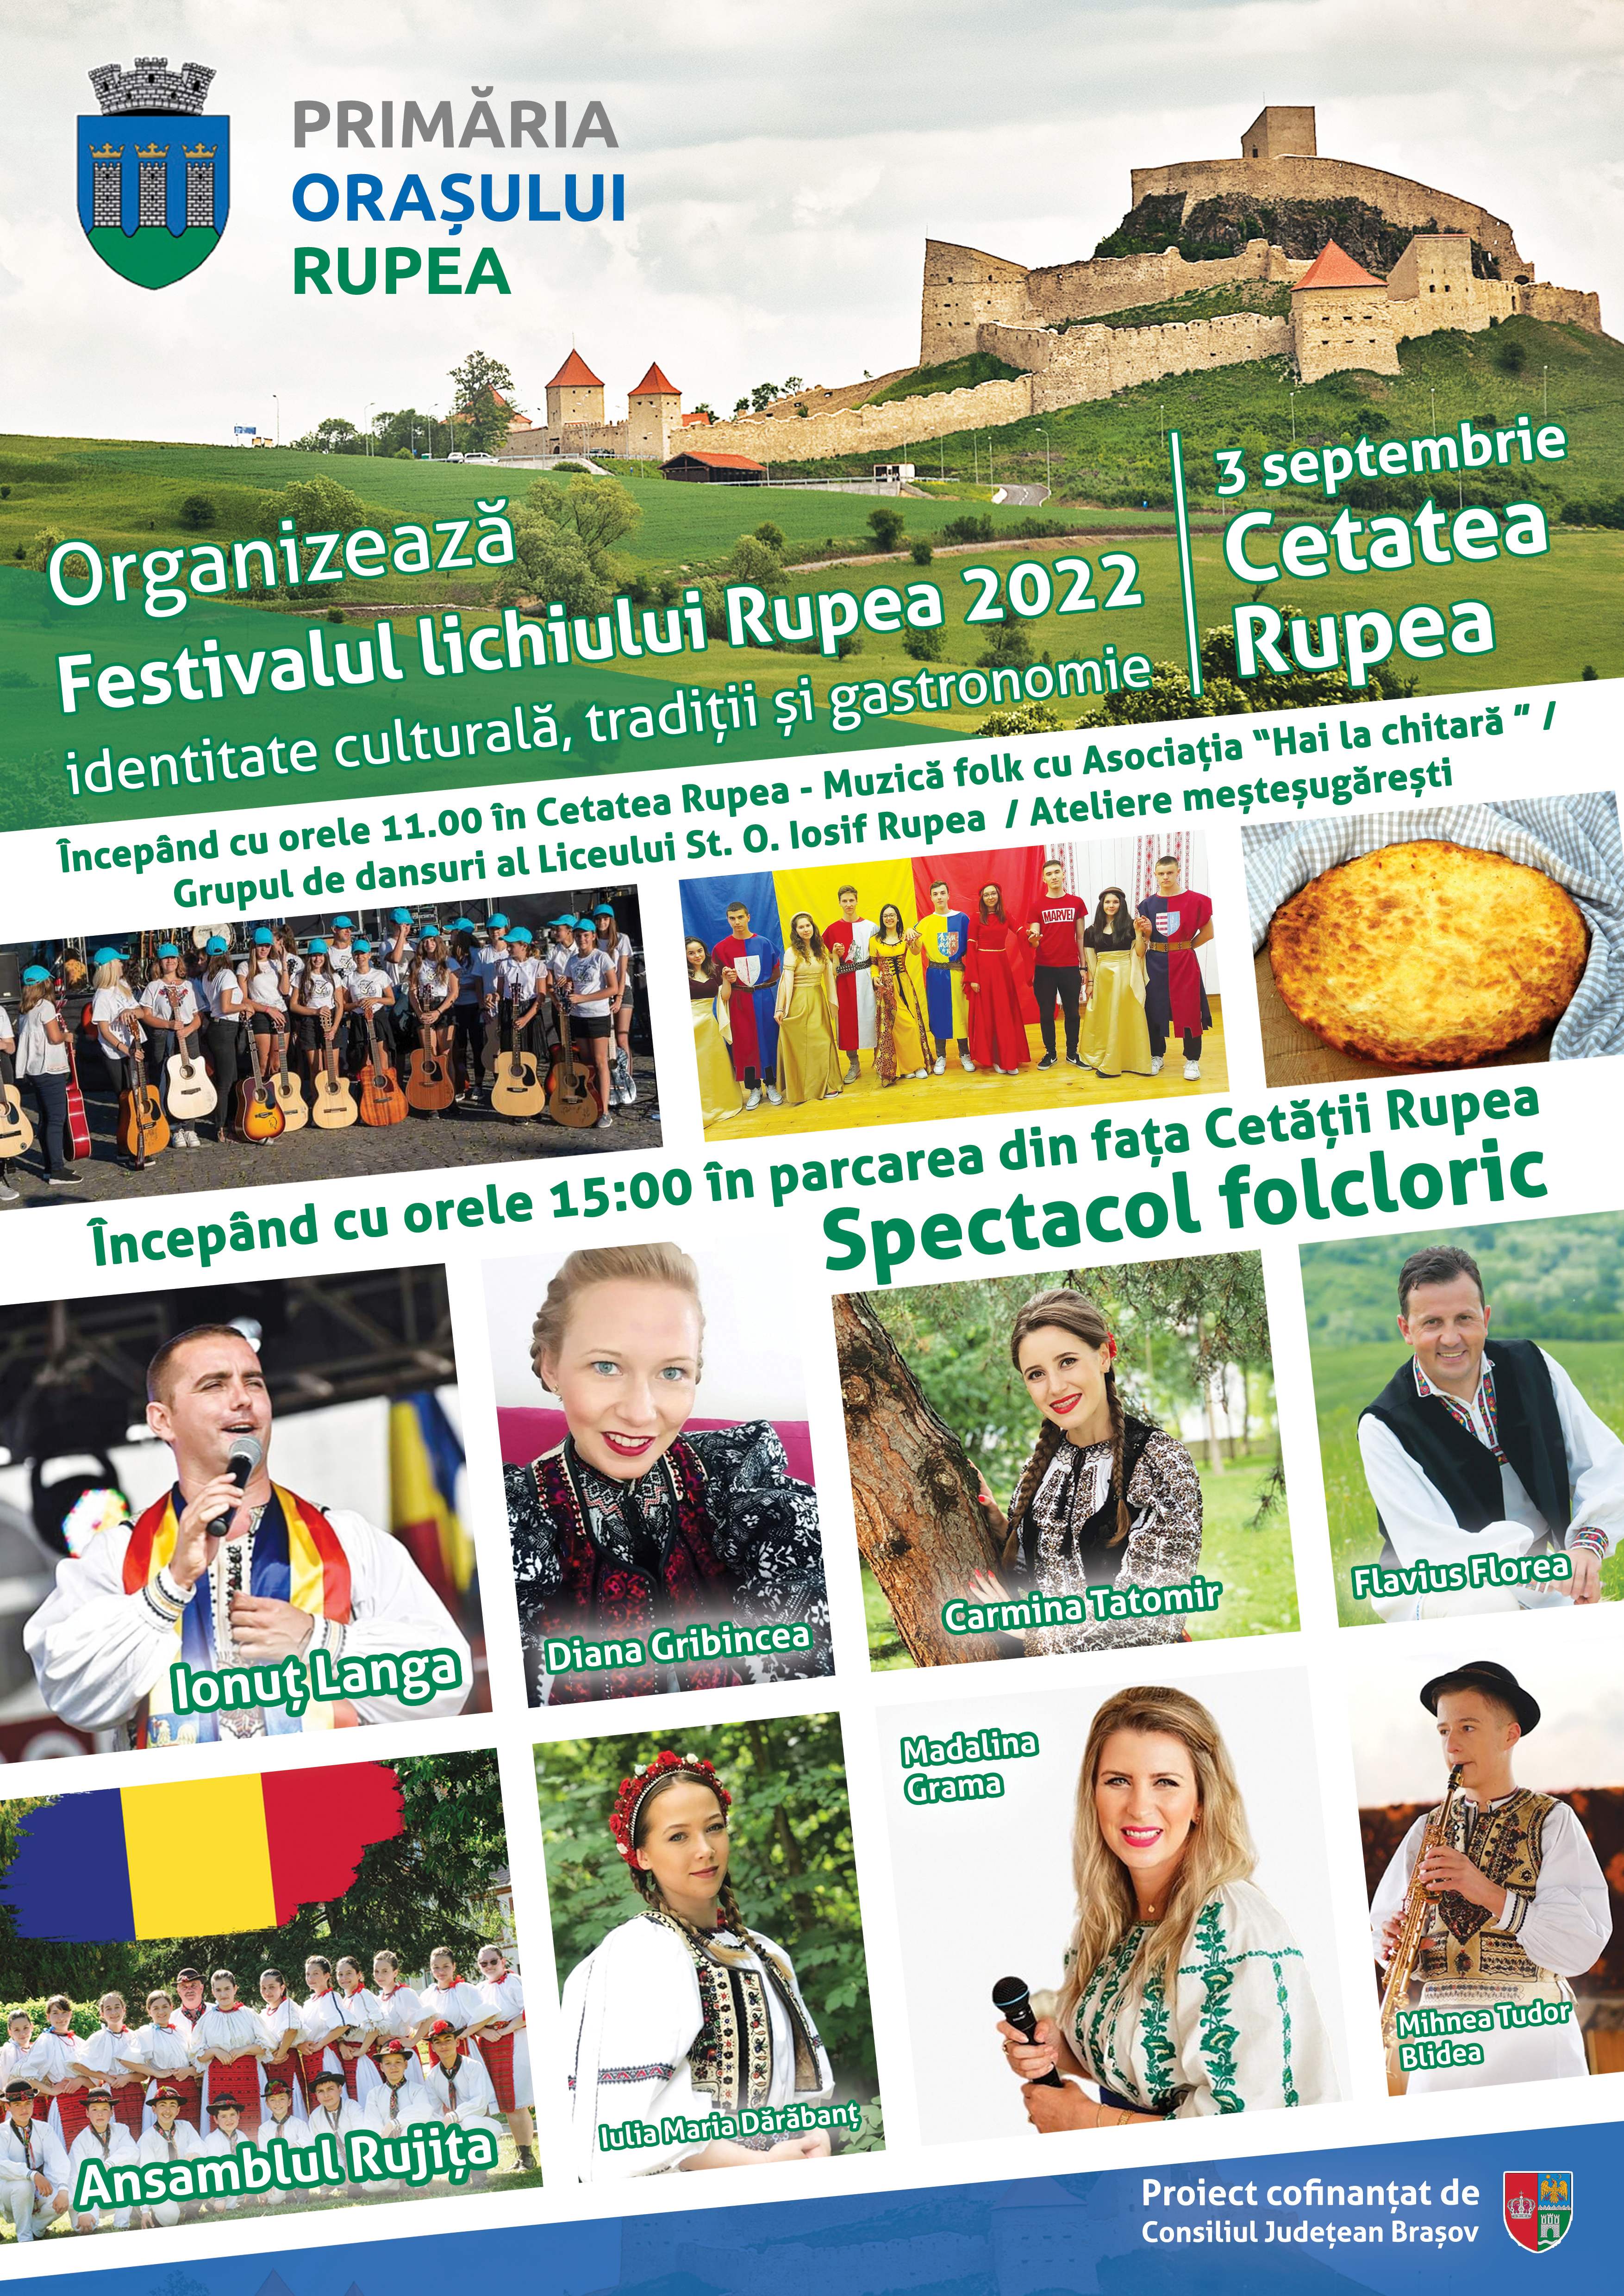 Festivalul lichiului Rupea 2022 – identitate culturală, tradiții și gastronomie”